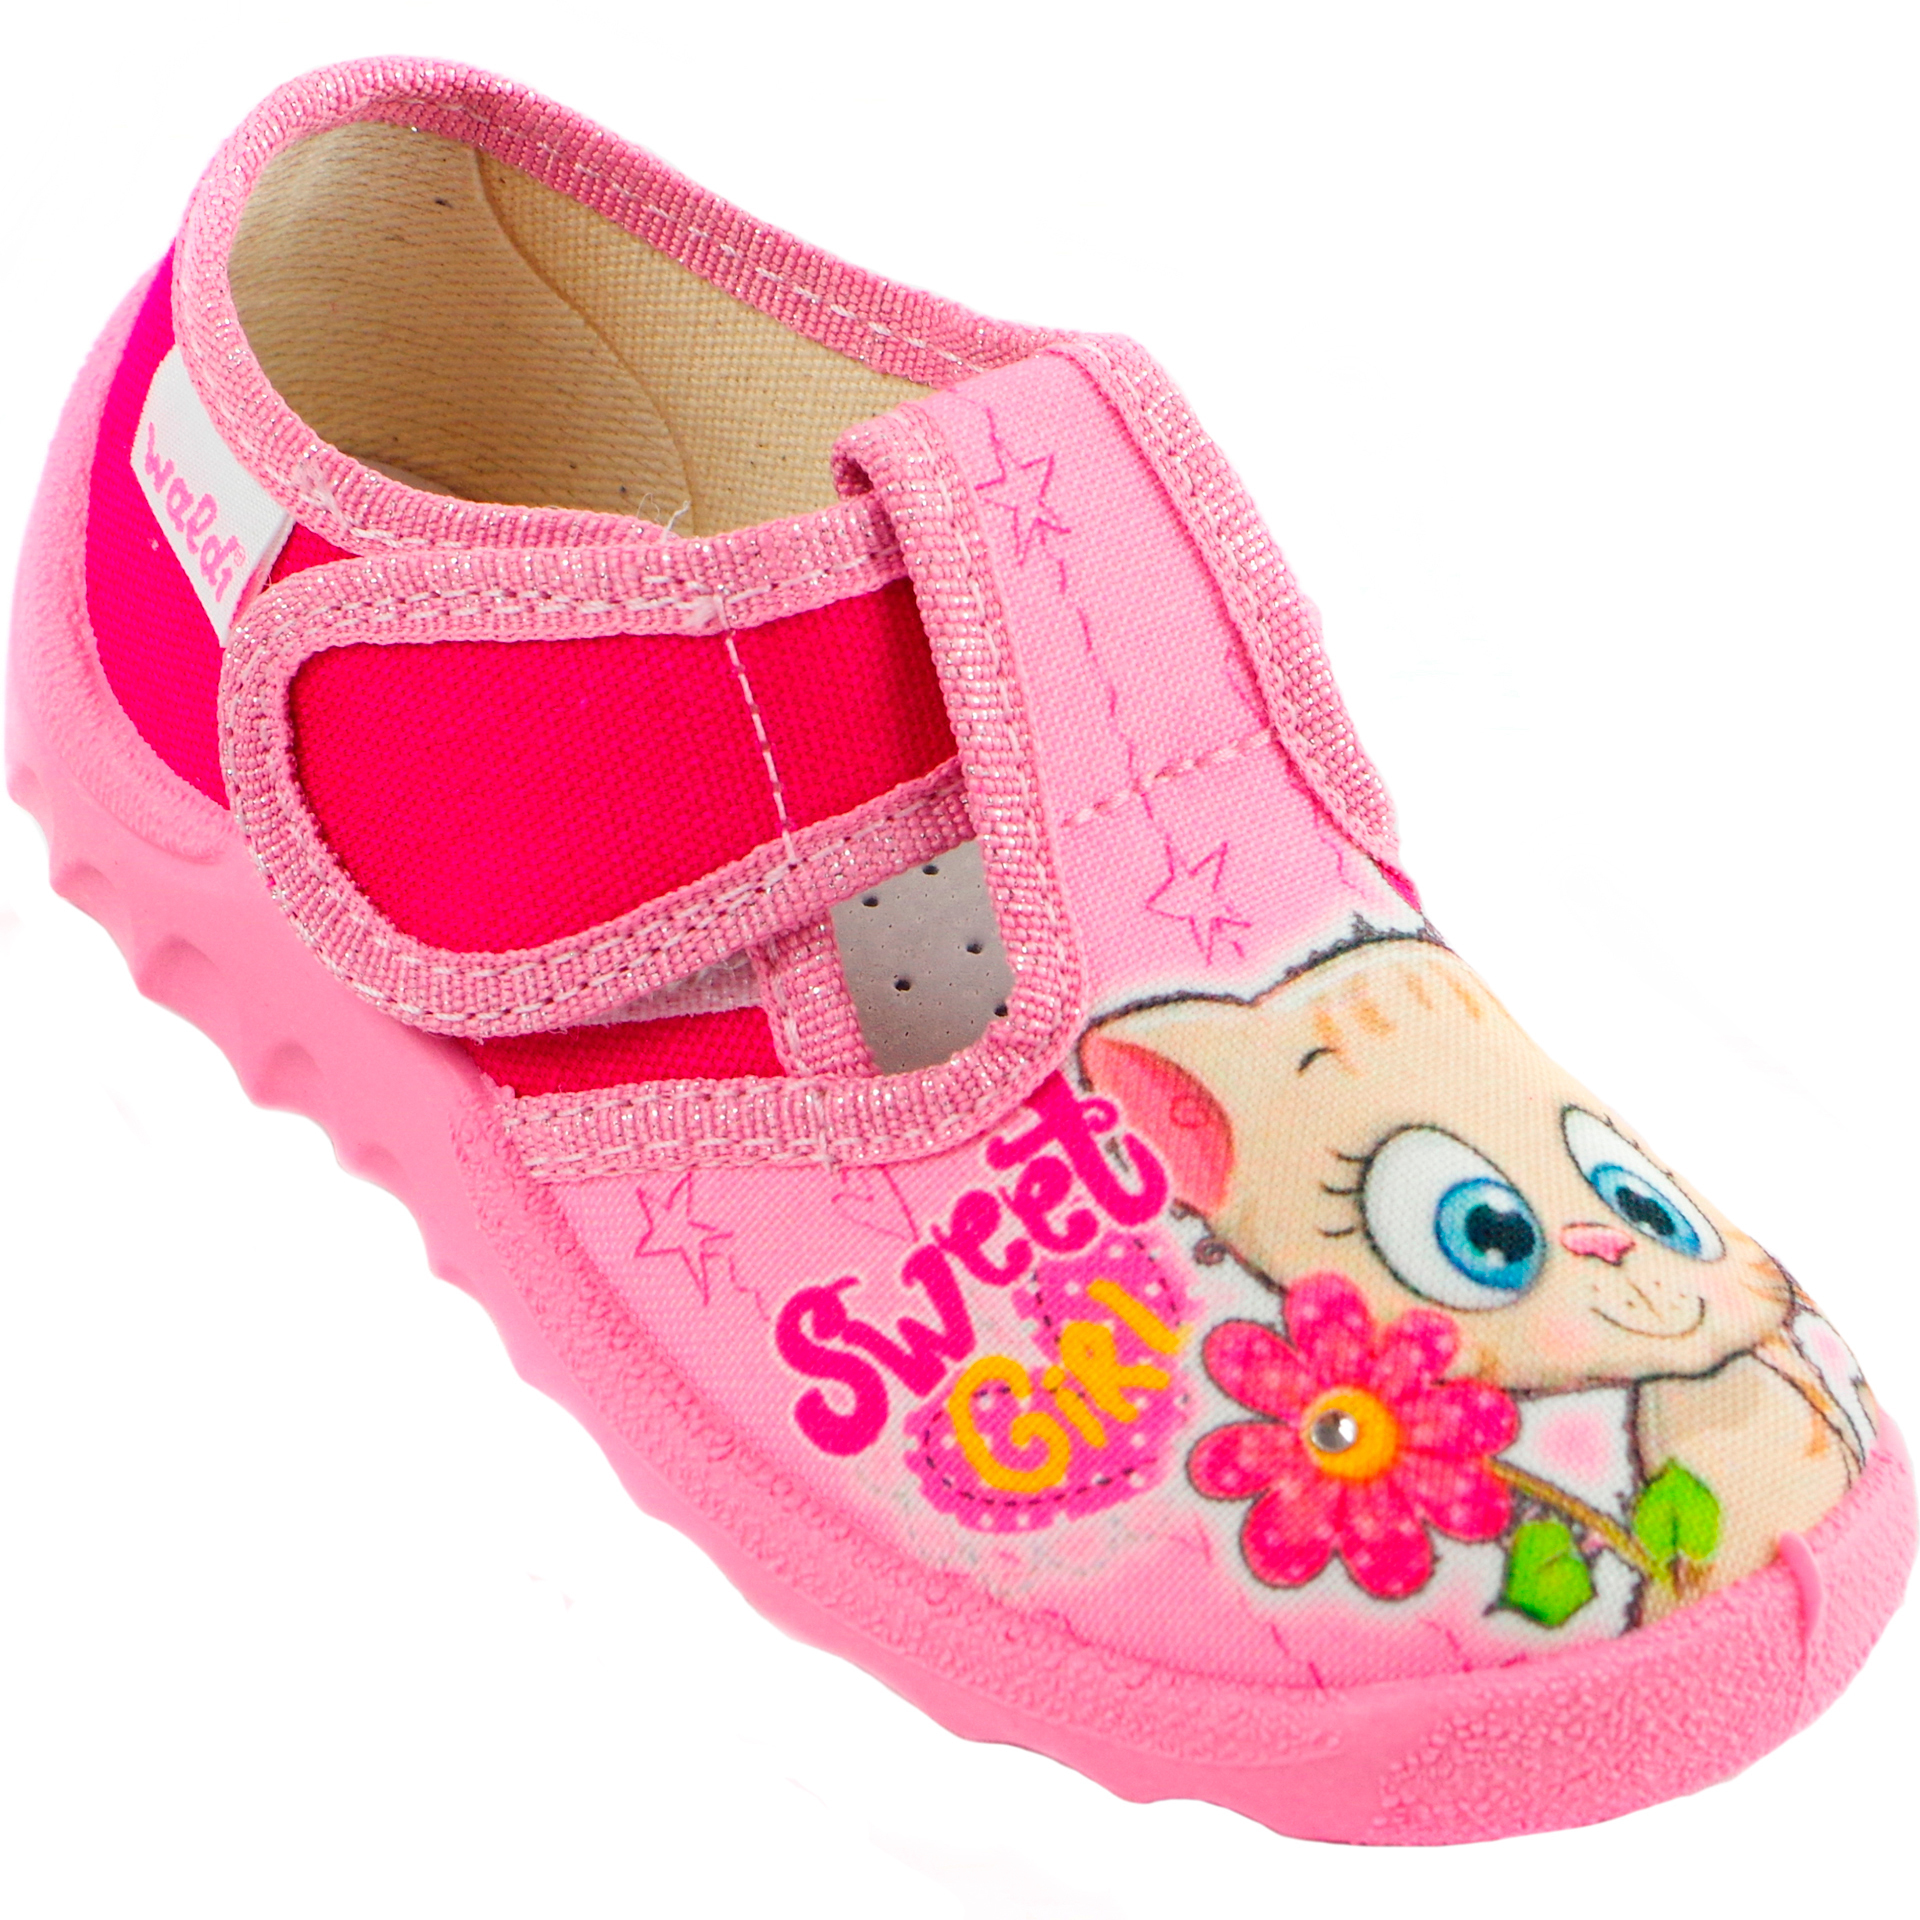 Текстильная обувь для девочек Тапочки Даша (1911) цвет Розовый 21-27 размеры – Sole Kids